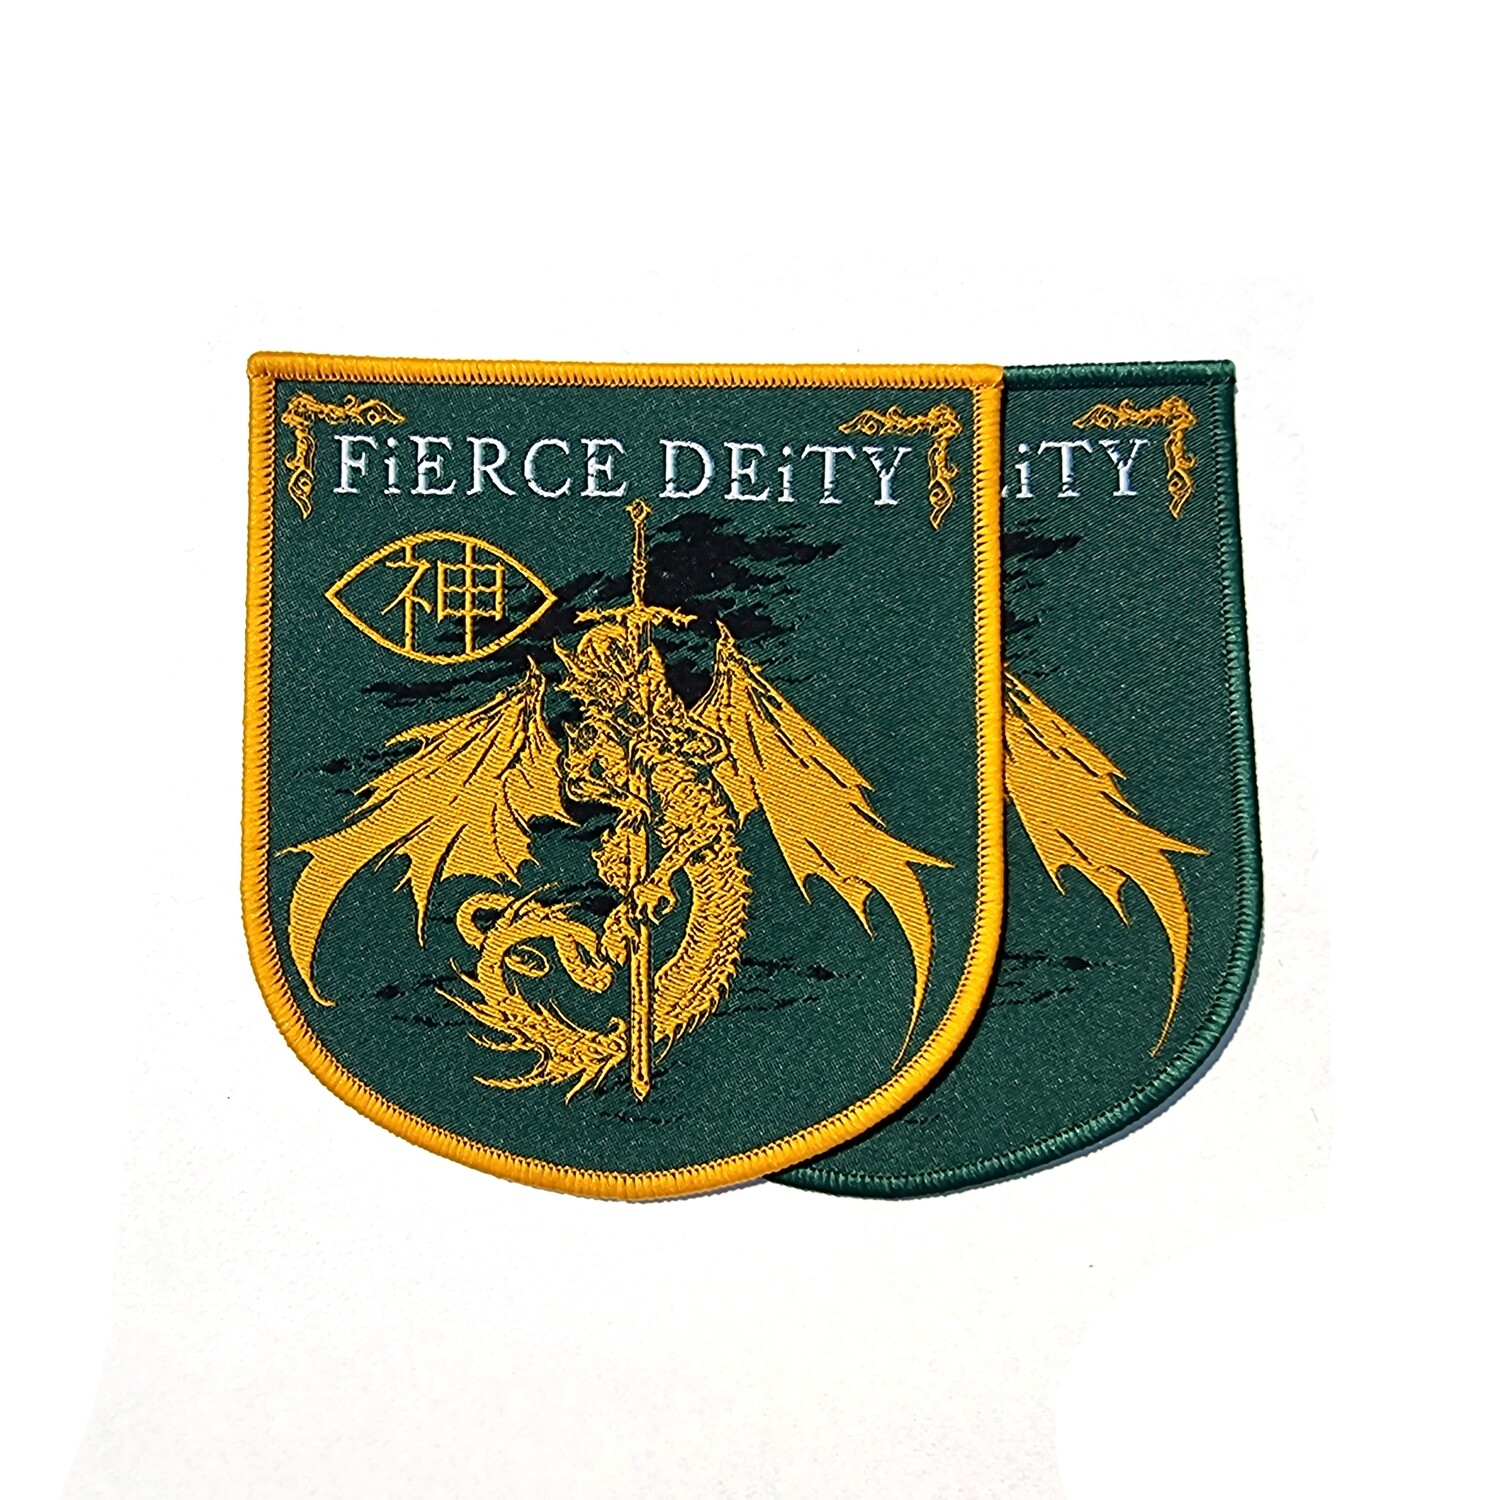 Fierce Deity - A Dragon, Gold